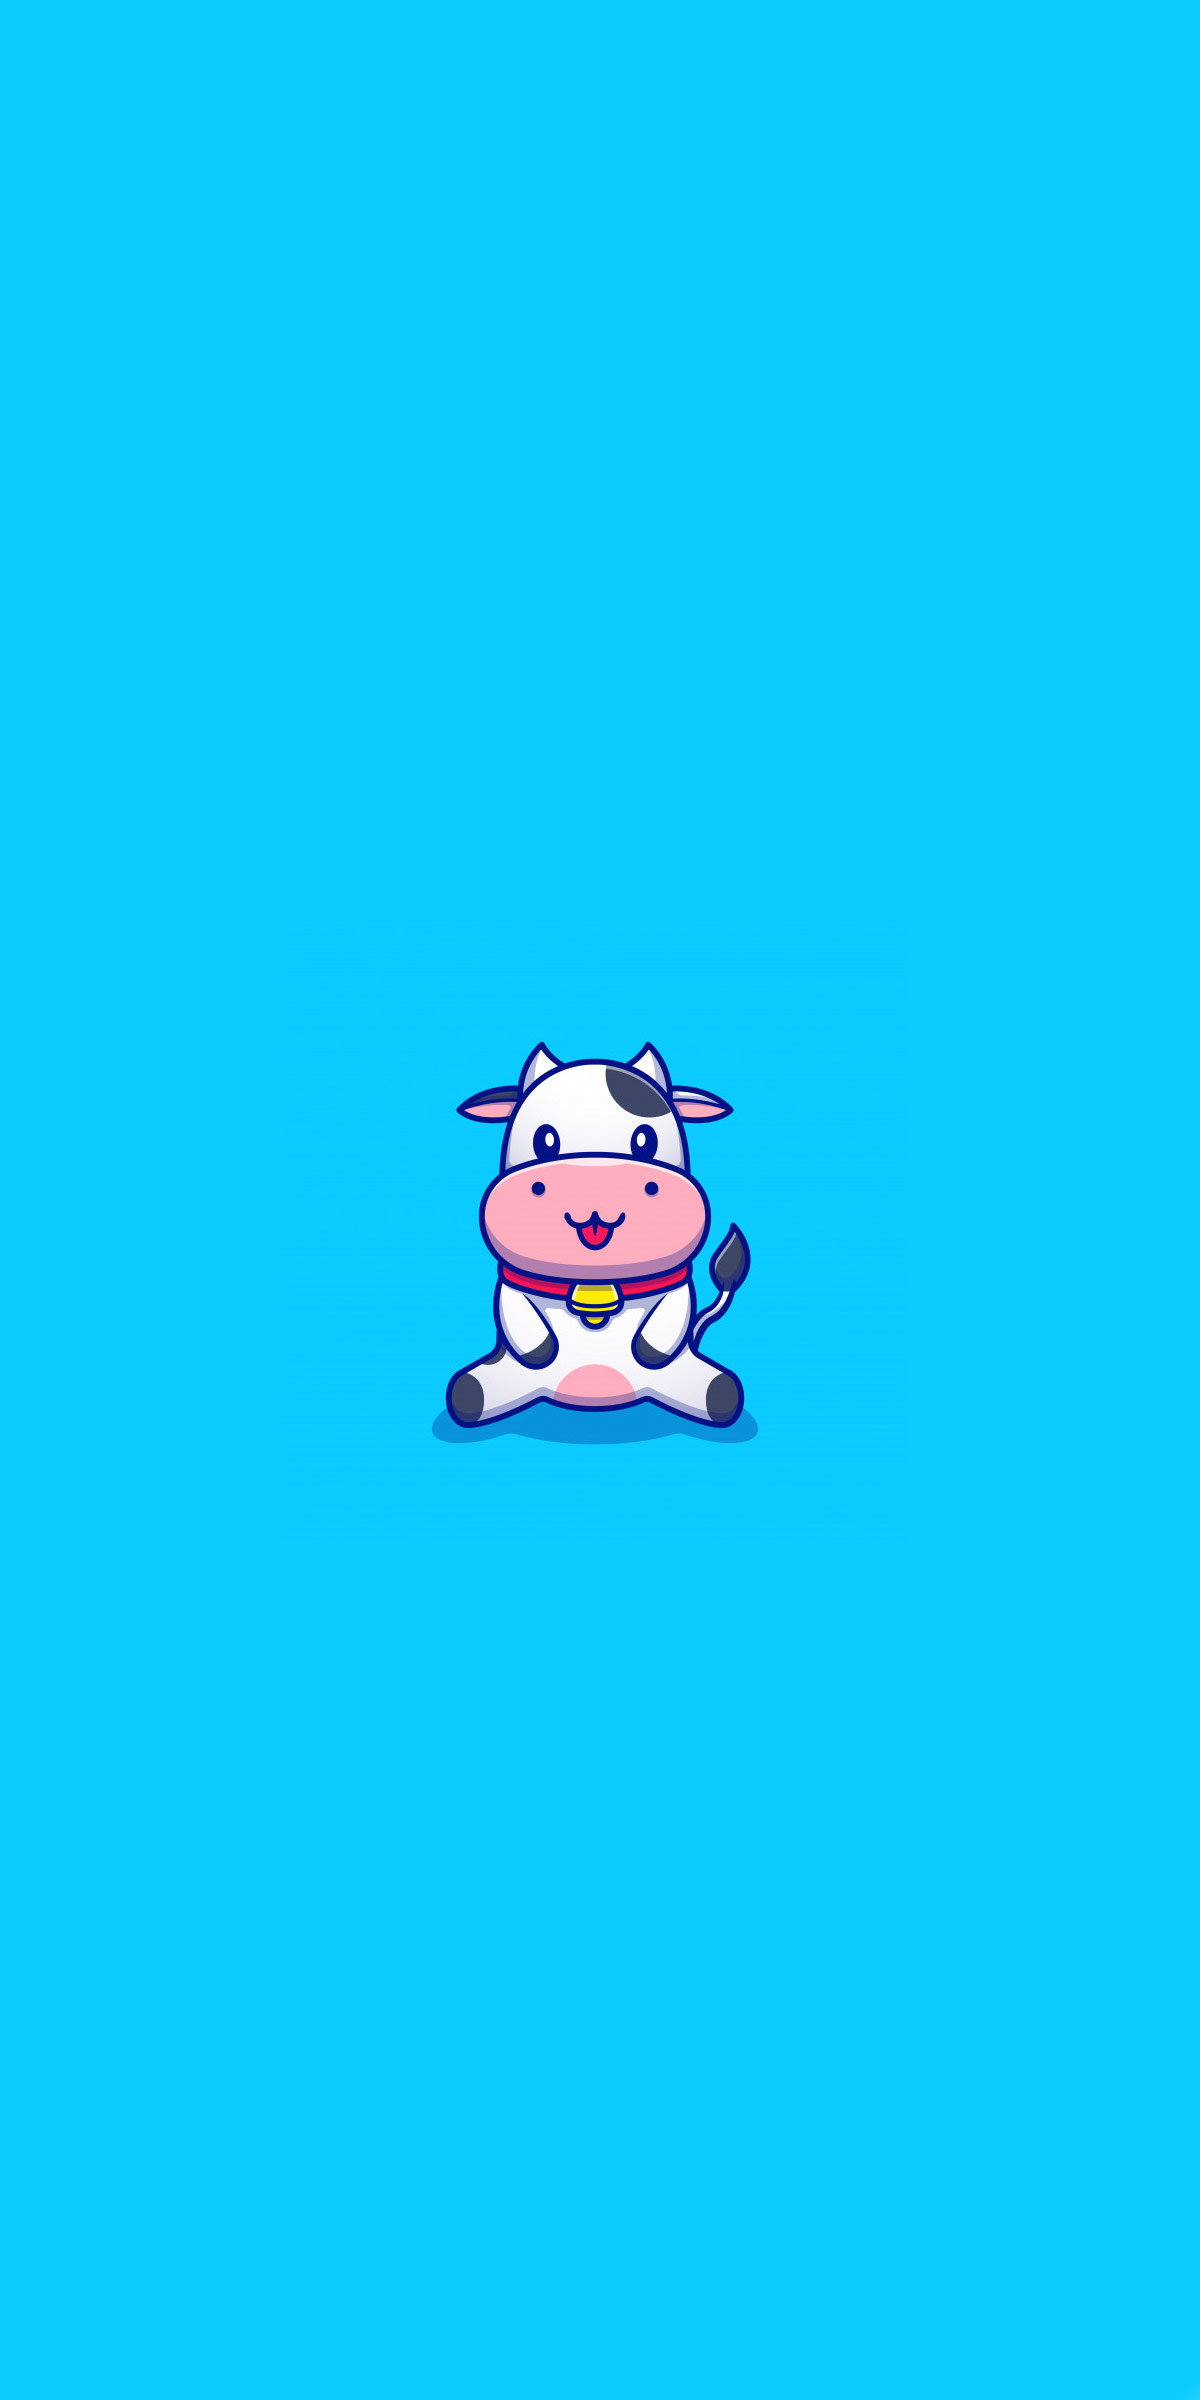 Cách vẽ, tô màu tranh hình con bò sữa cute dễ thương đơn giản.